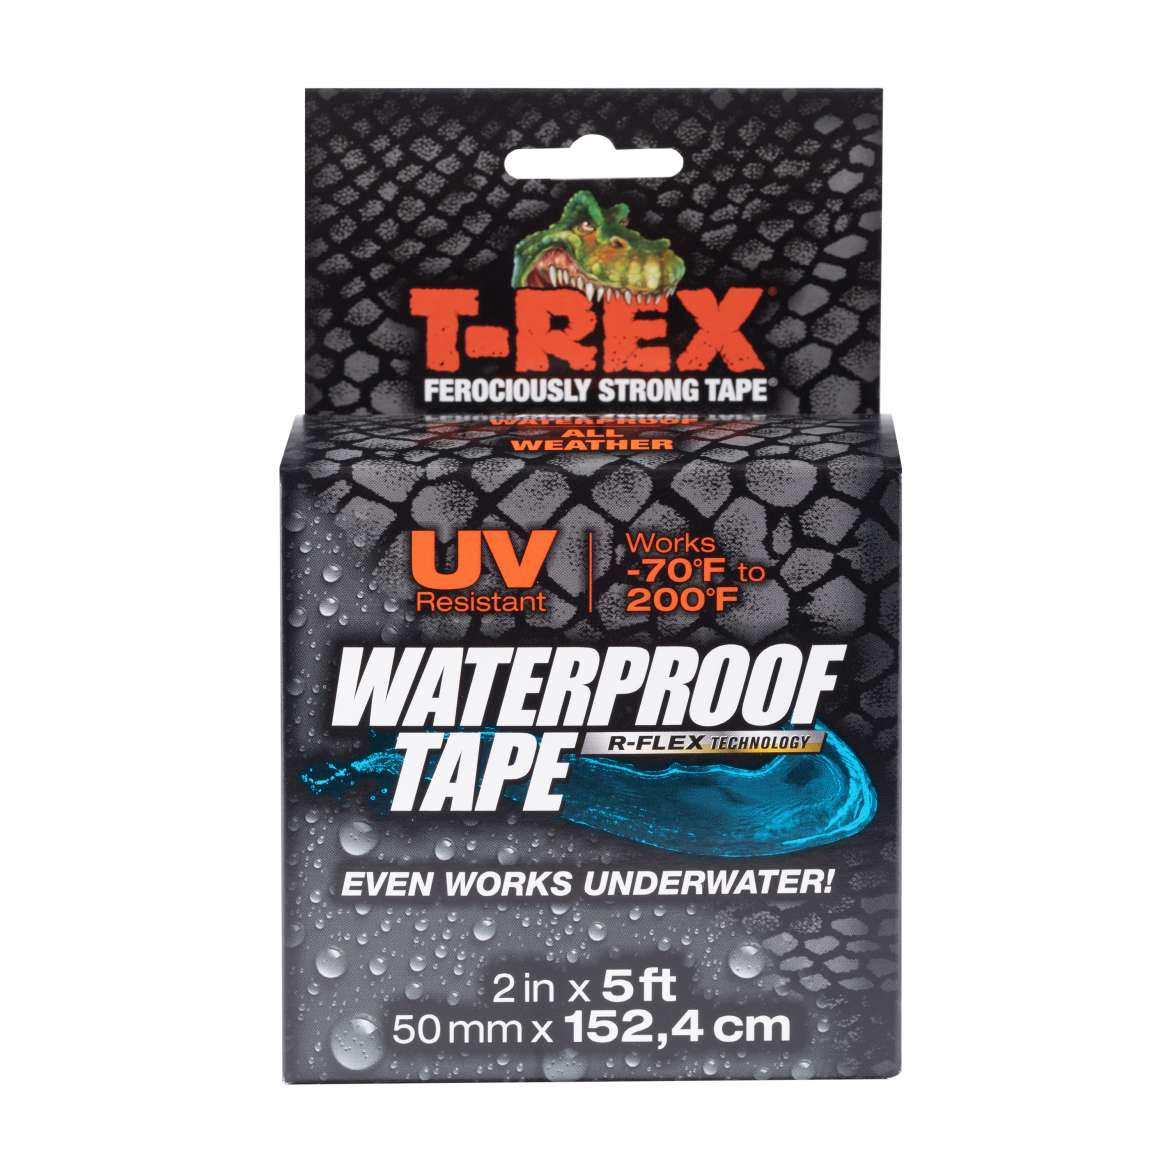 T-Rex Waterproof Repair Tape in box